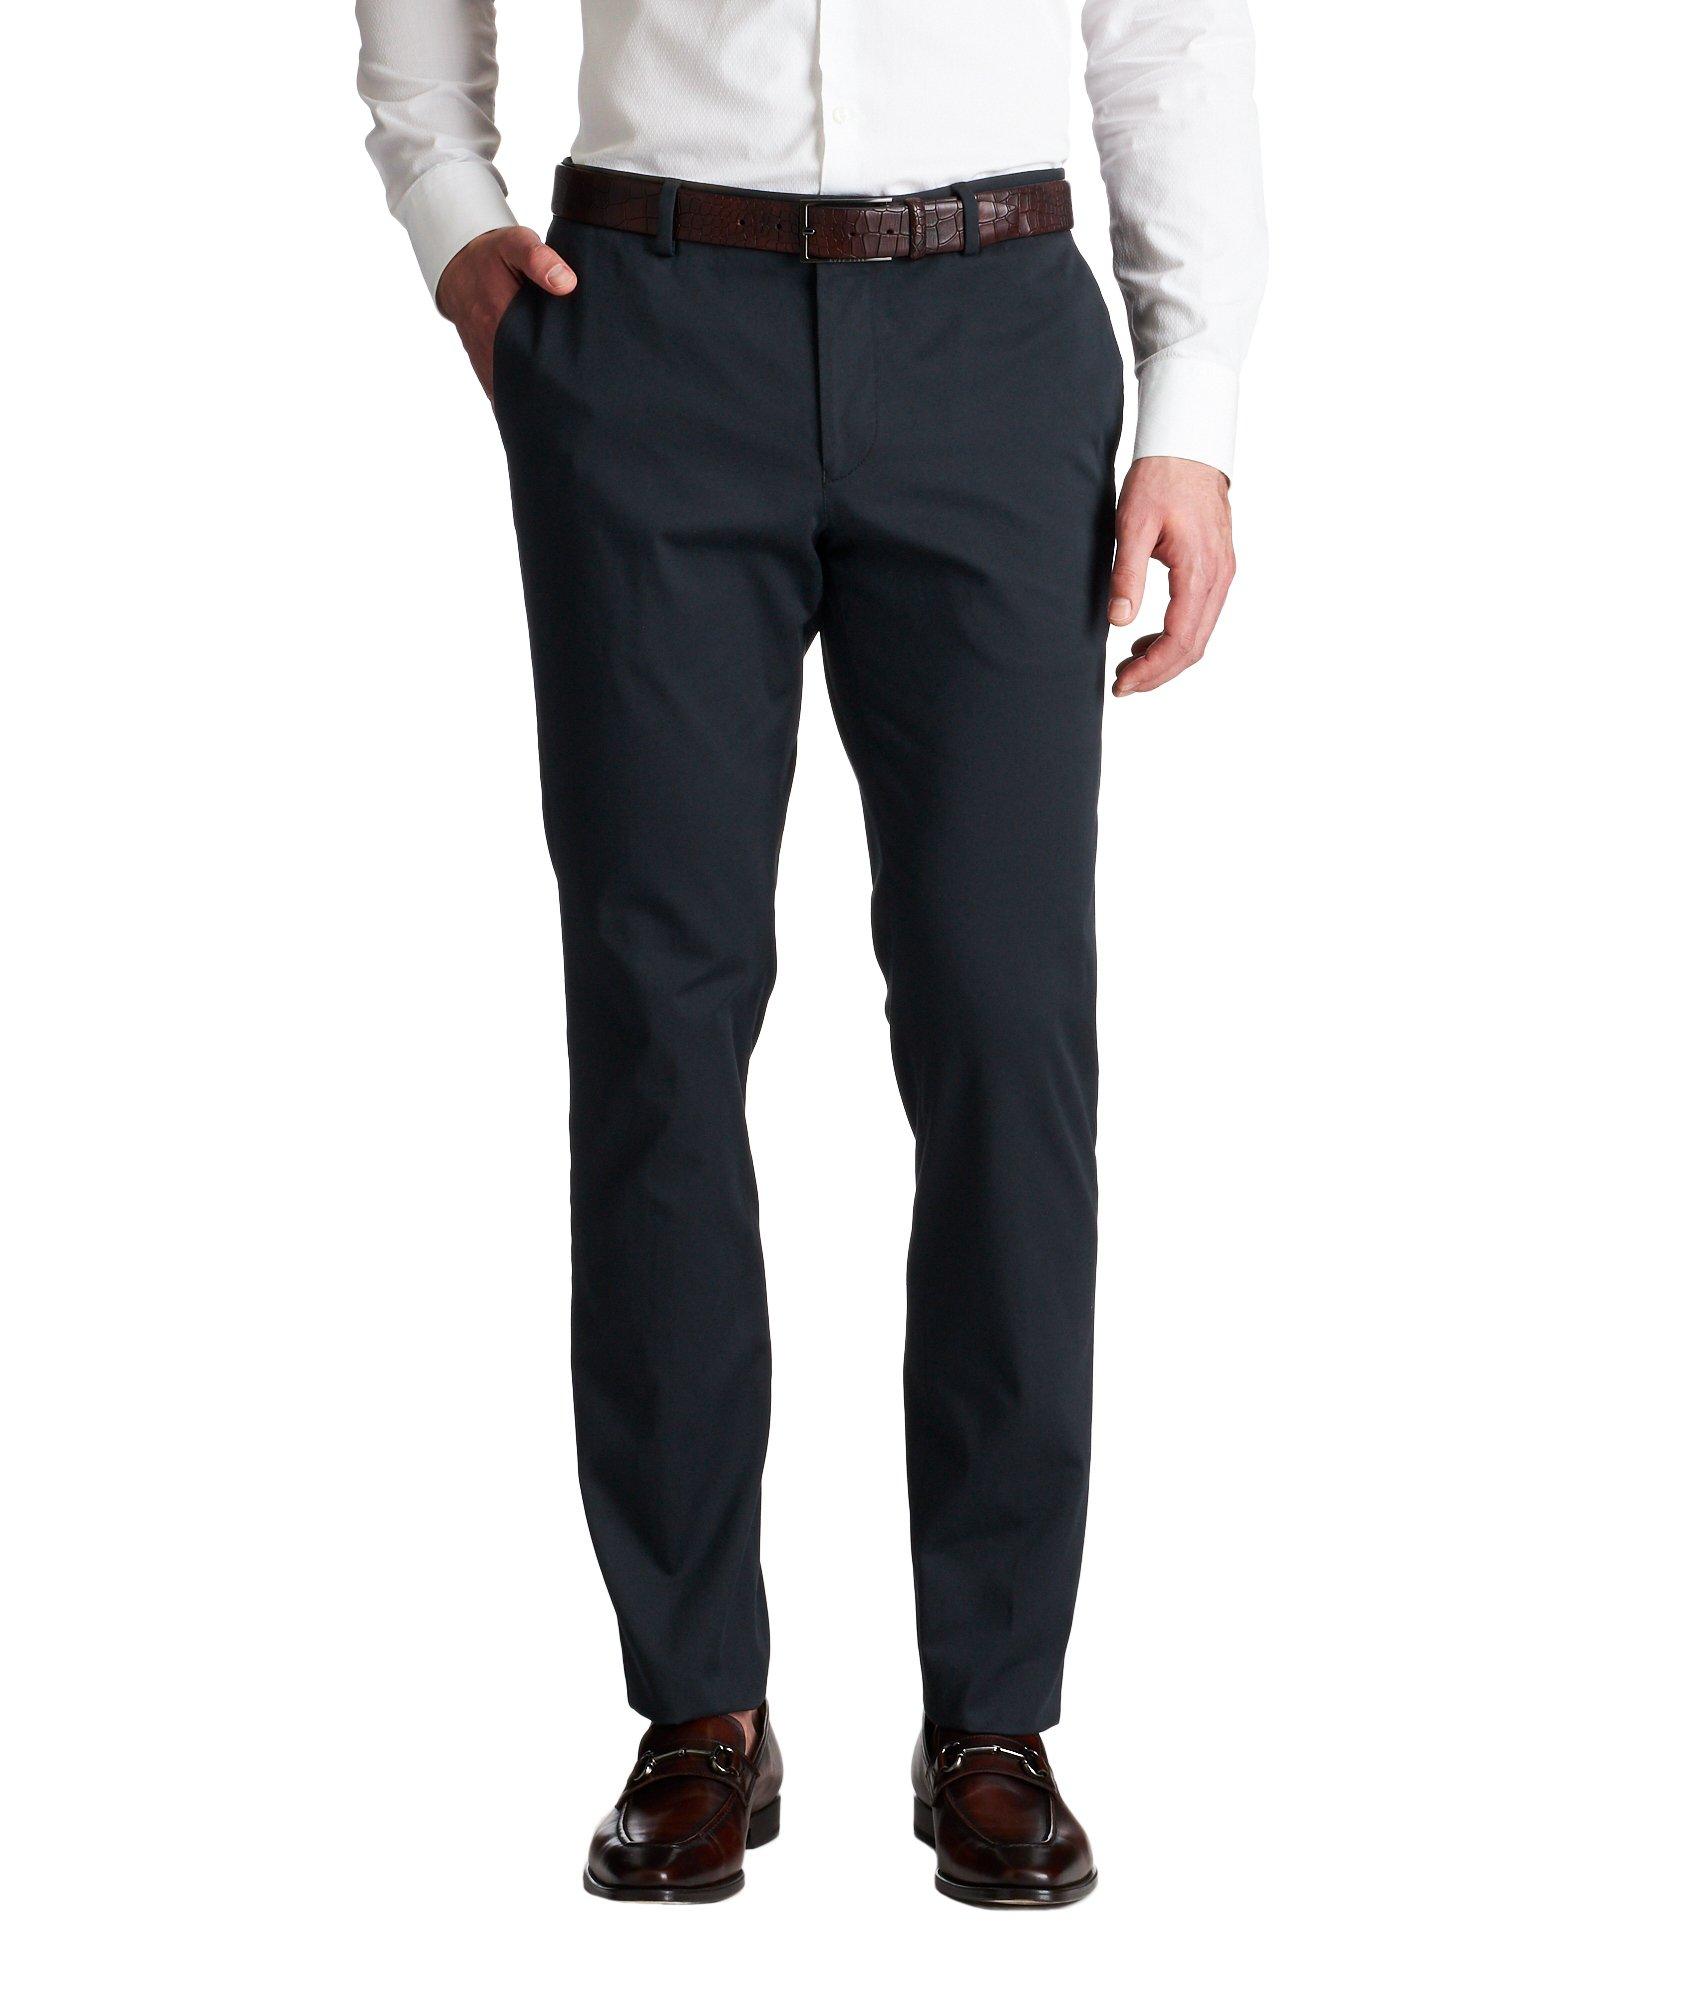 Pantalon habillé en coton extensible de coupe amincie image 0